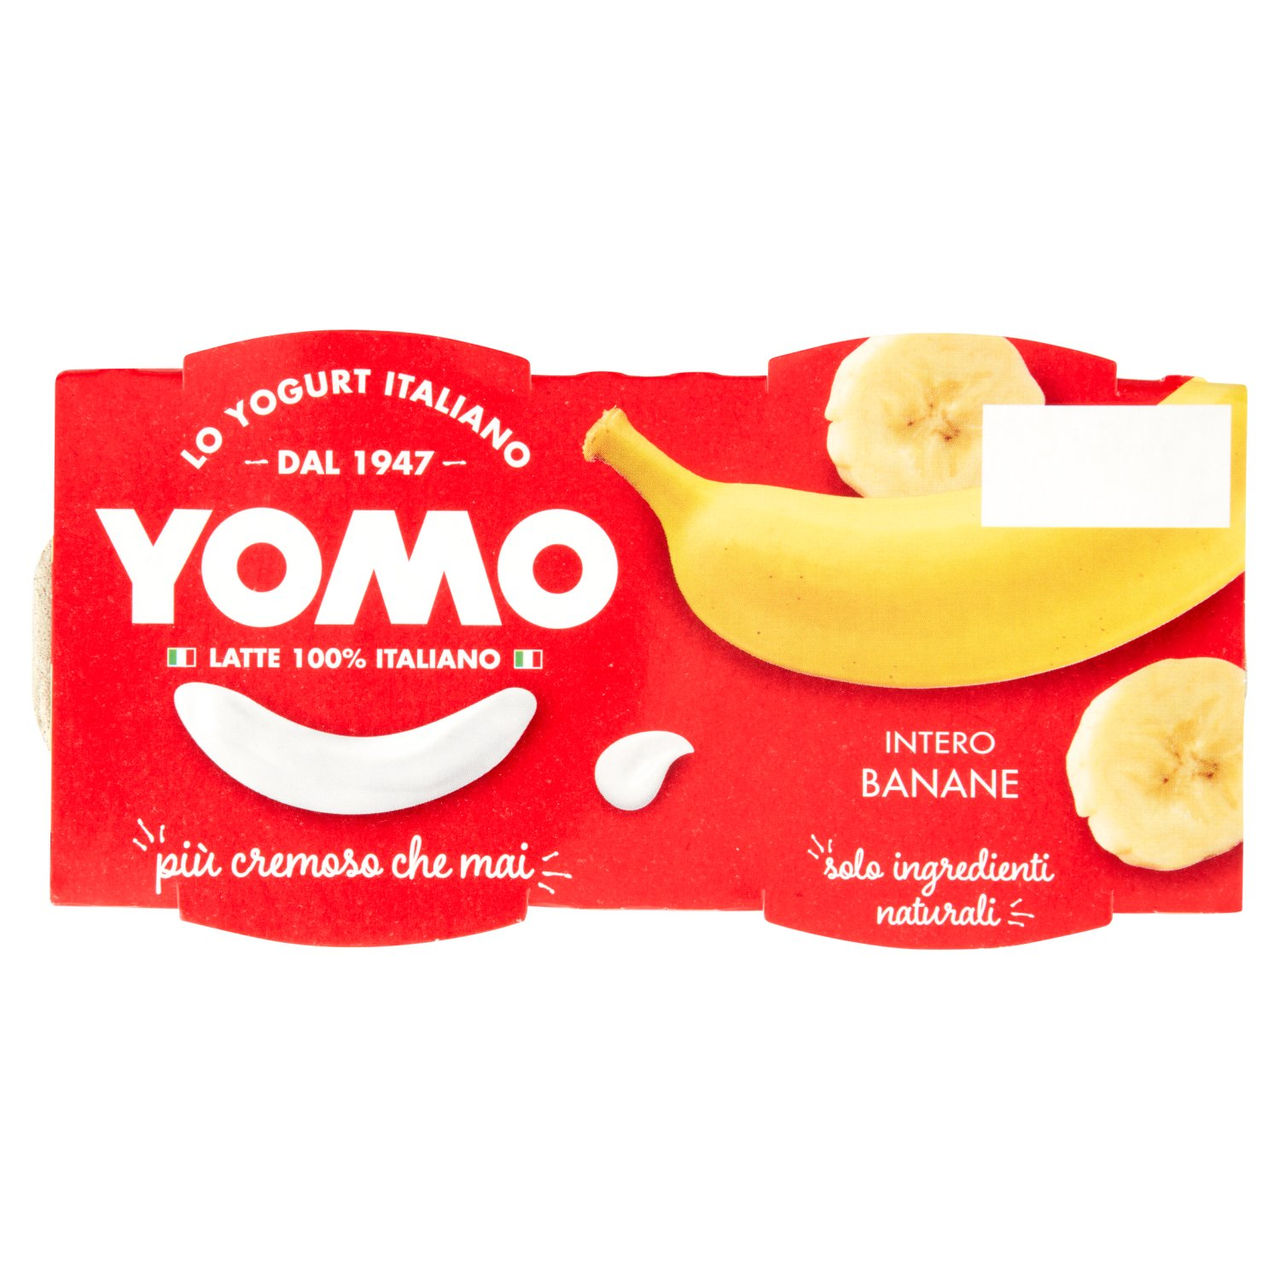 Yomo Intero Banane 2 x 125 g